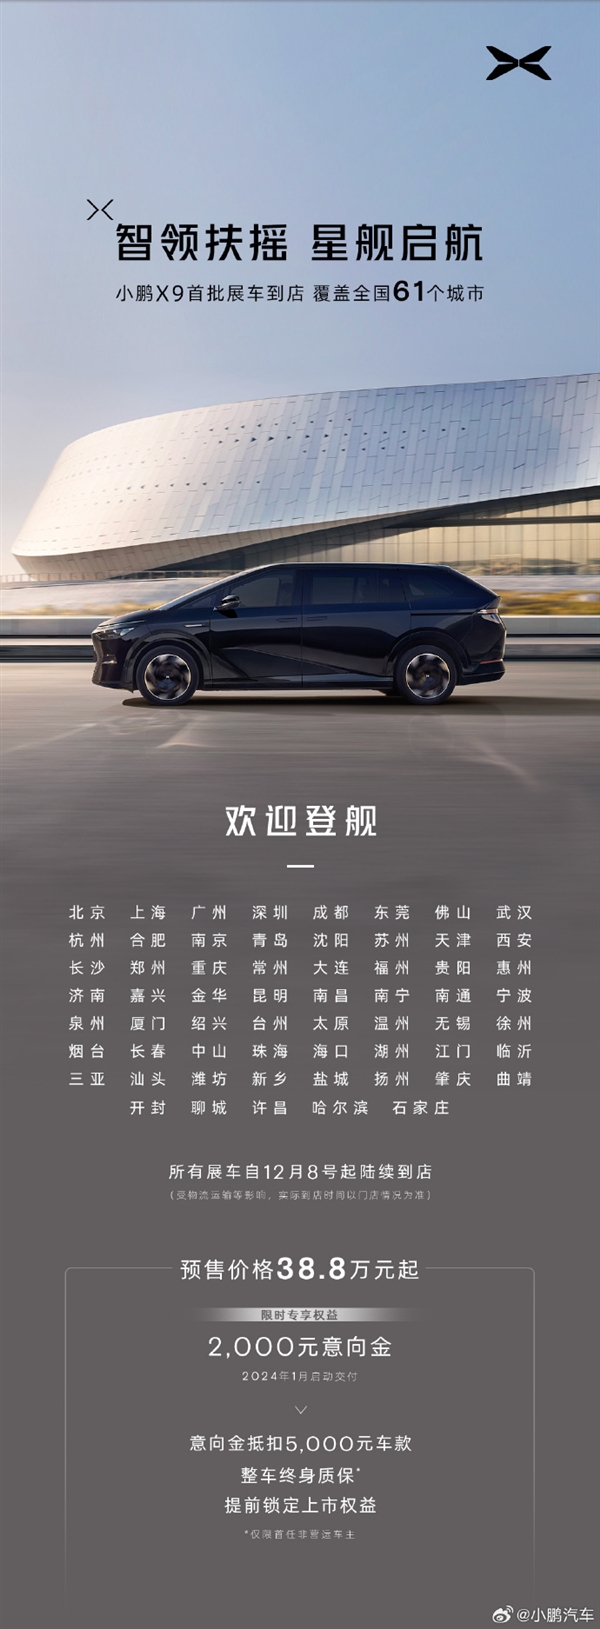 小鹏X9上市在即：首批展车到店 明年1月开启交付  第1张